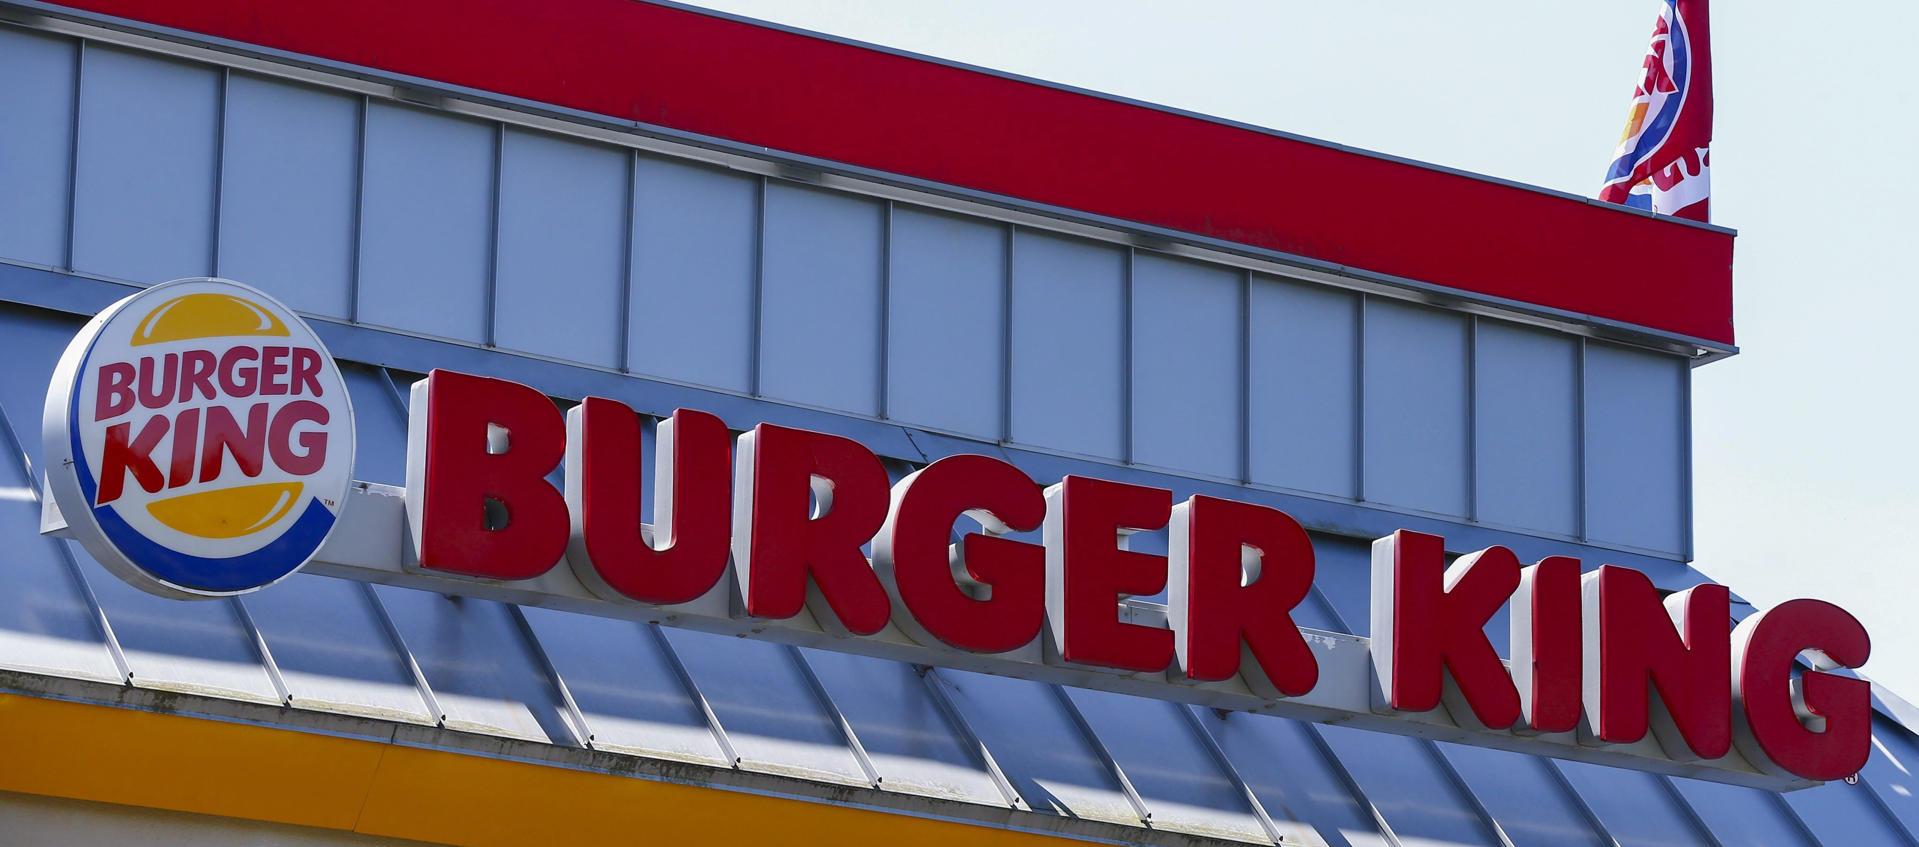 El accidente ocurrió en una tienda de Burger King en Florida en julio de 2019.